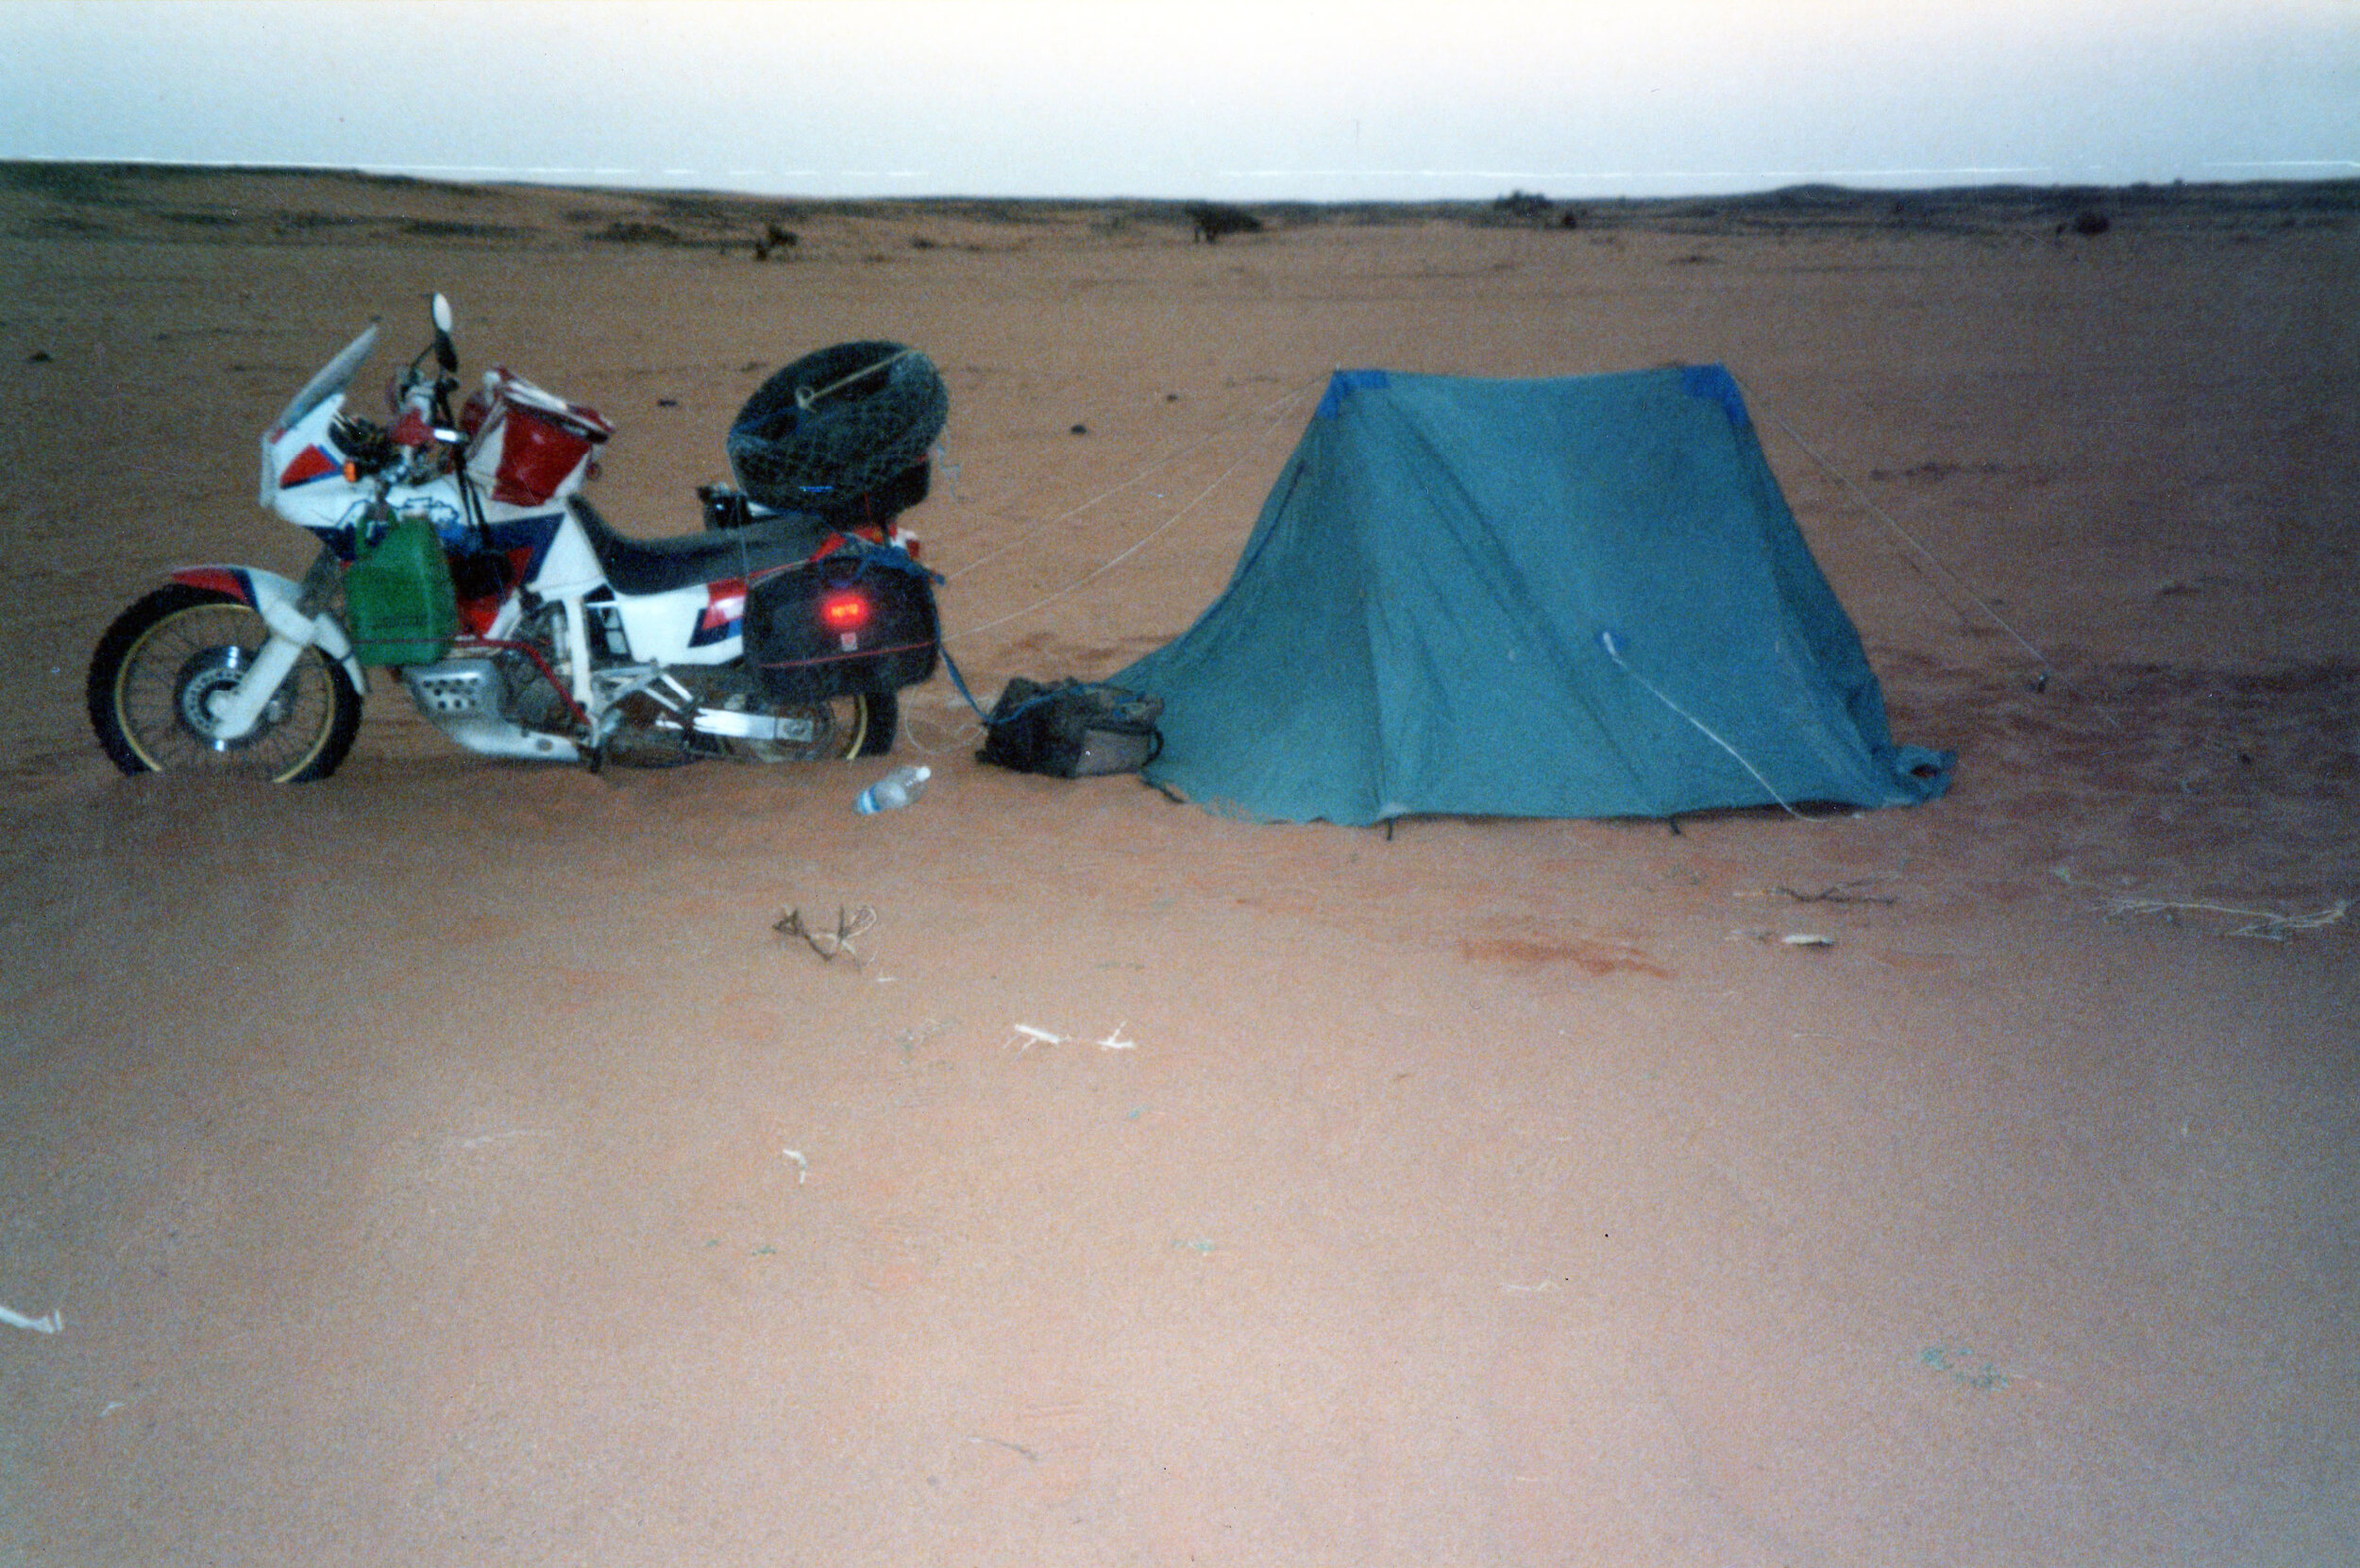 Camping in between Khartoum and Wadi Halfa, Sudan